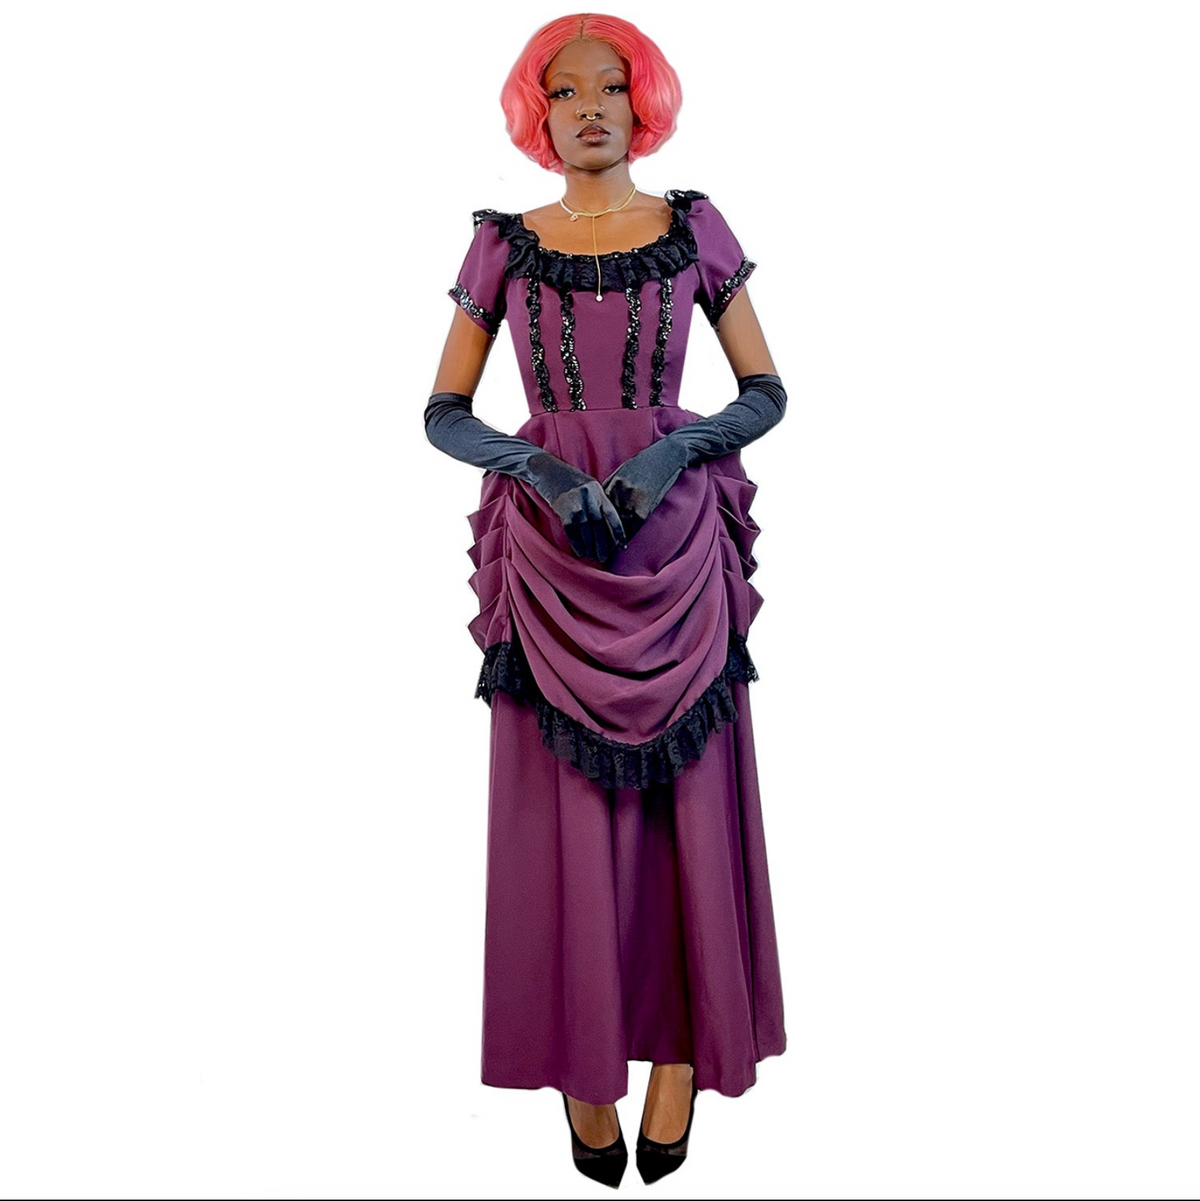 Exclusive Victorian Emma In Purple Women's Adult Costume